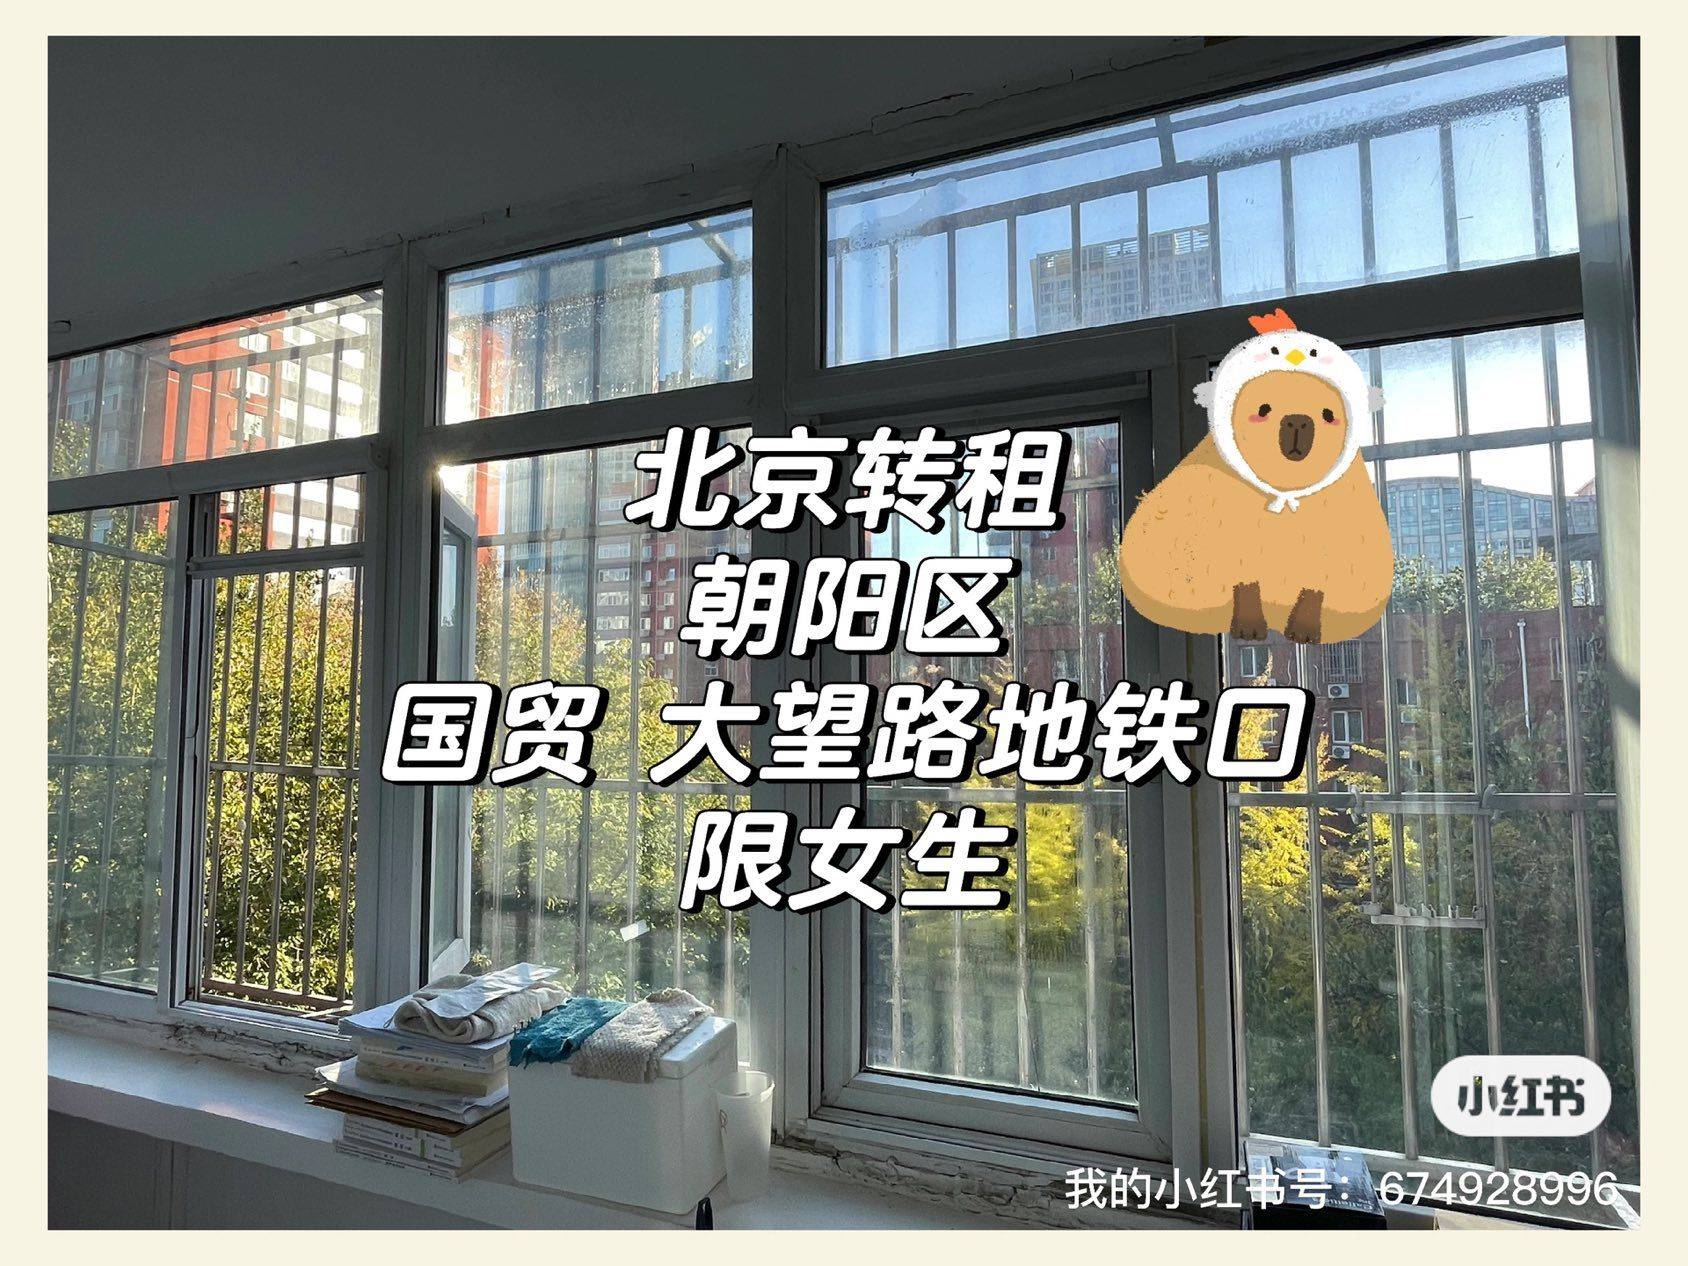 北京-朝阳-Line 10,👯‍♀️,长&短租,找室友,搬离,LGBTQ友好,合租